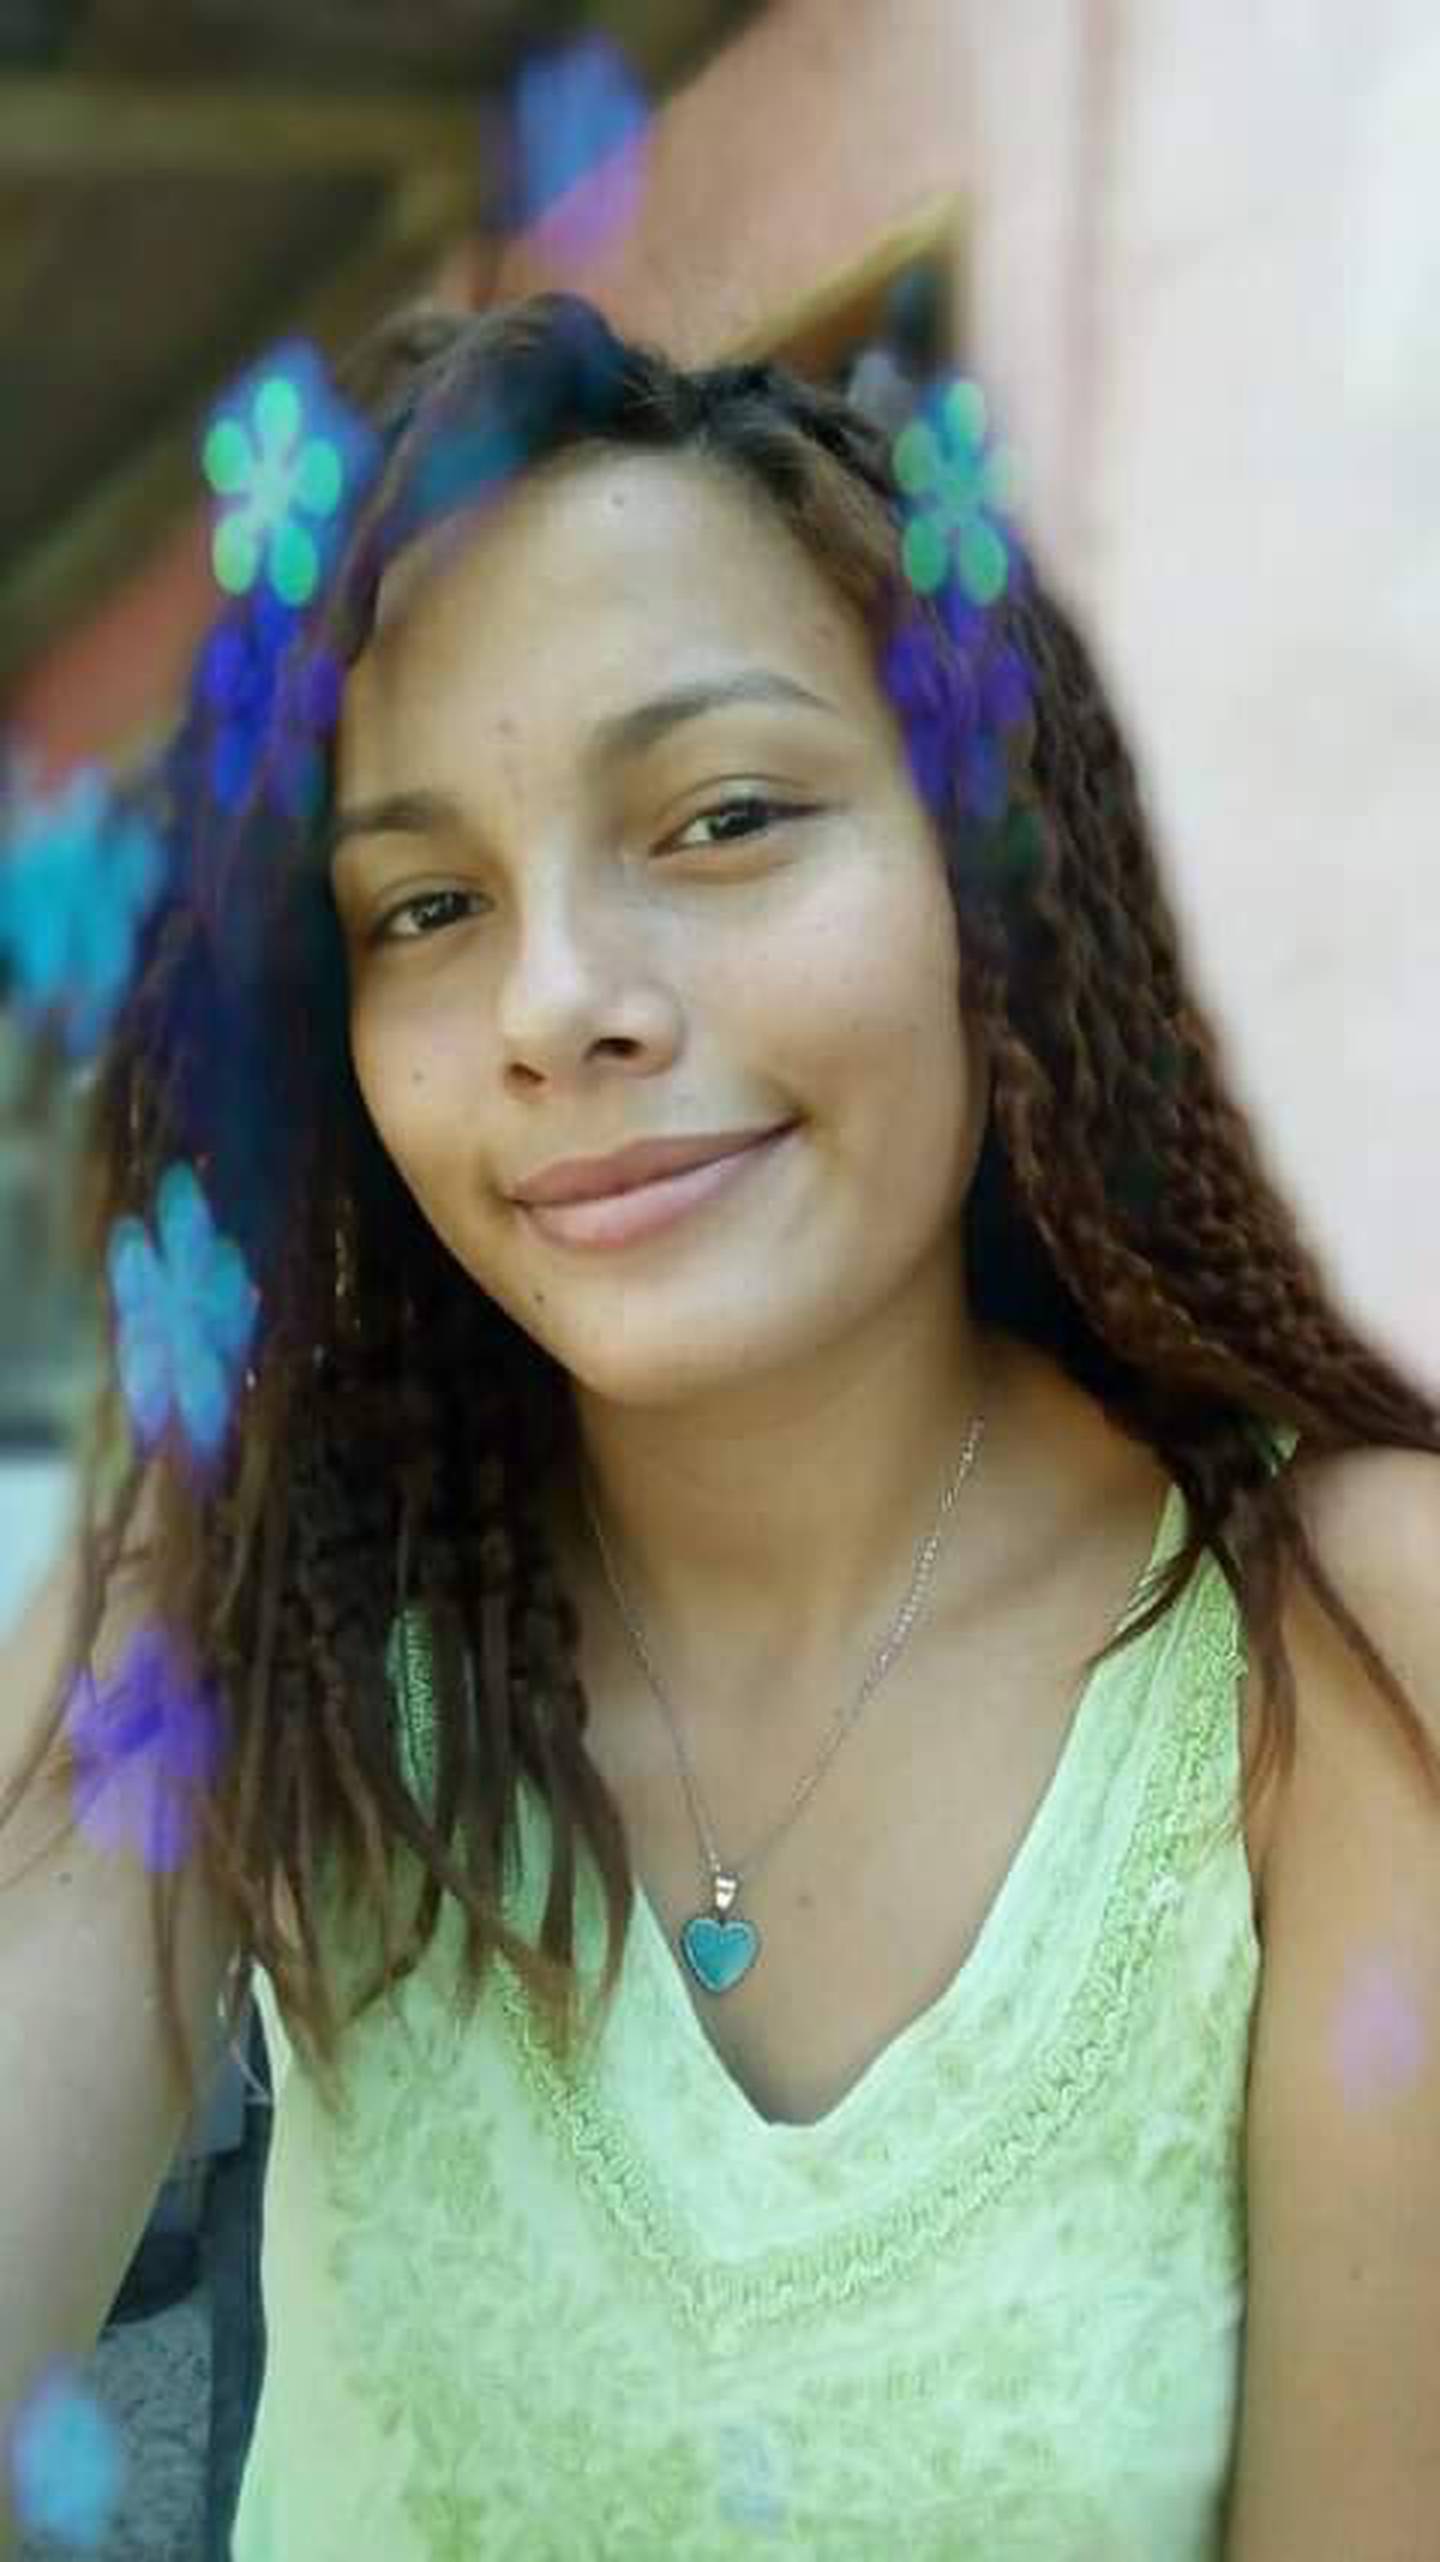 Estrella Dayana González Araya era una jovencita de 16 años que le arrebataron la vida y su cuerpo lo dejaron dentro de un pozo en playa Garza, Osa. Fotos: Sarah Chinchilla para La Teja